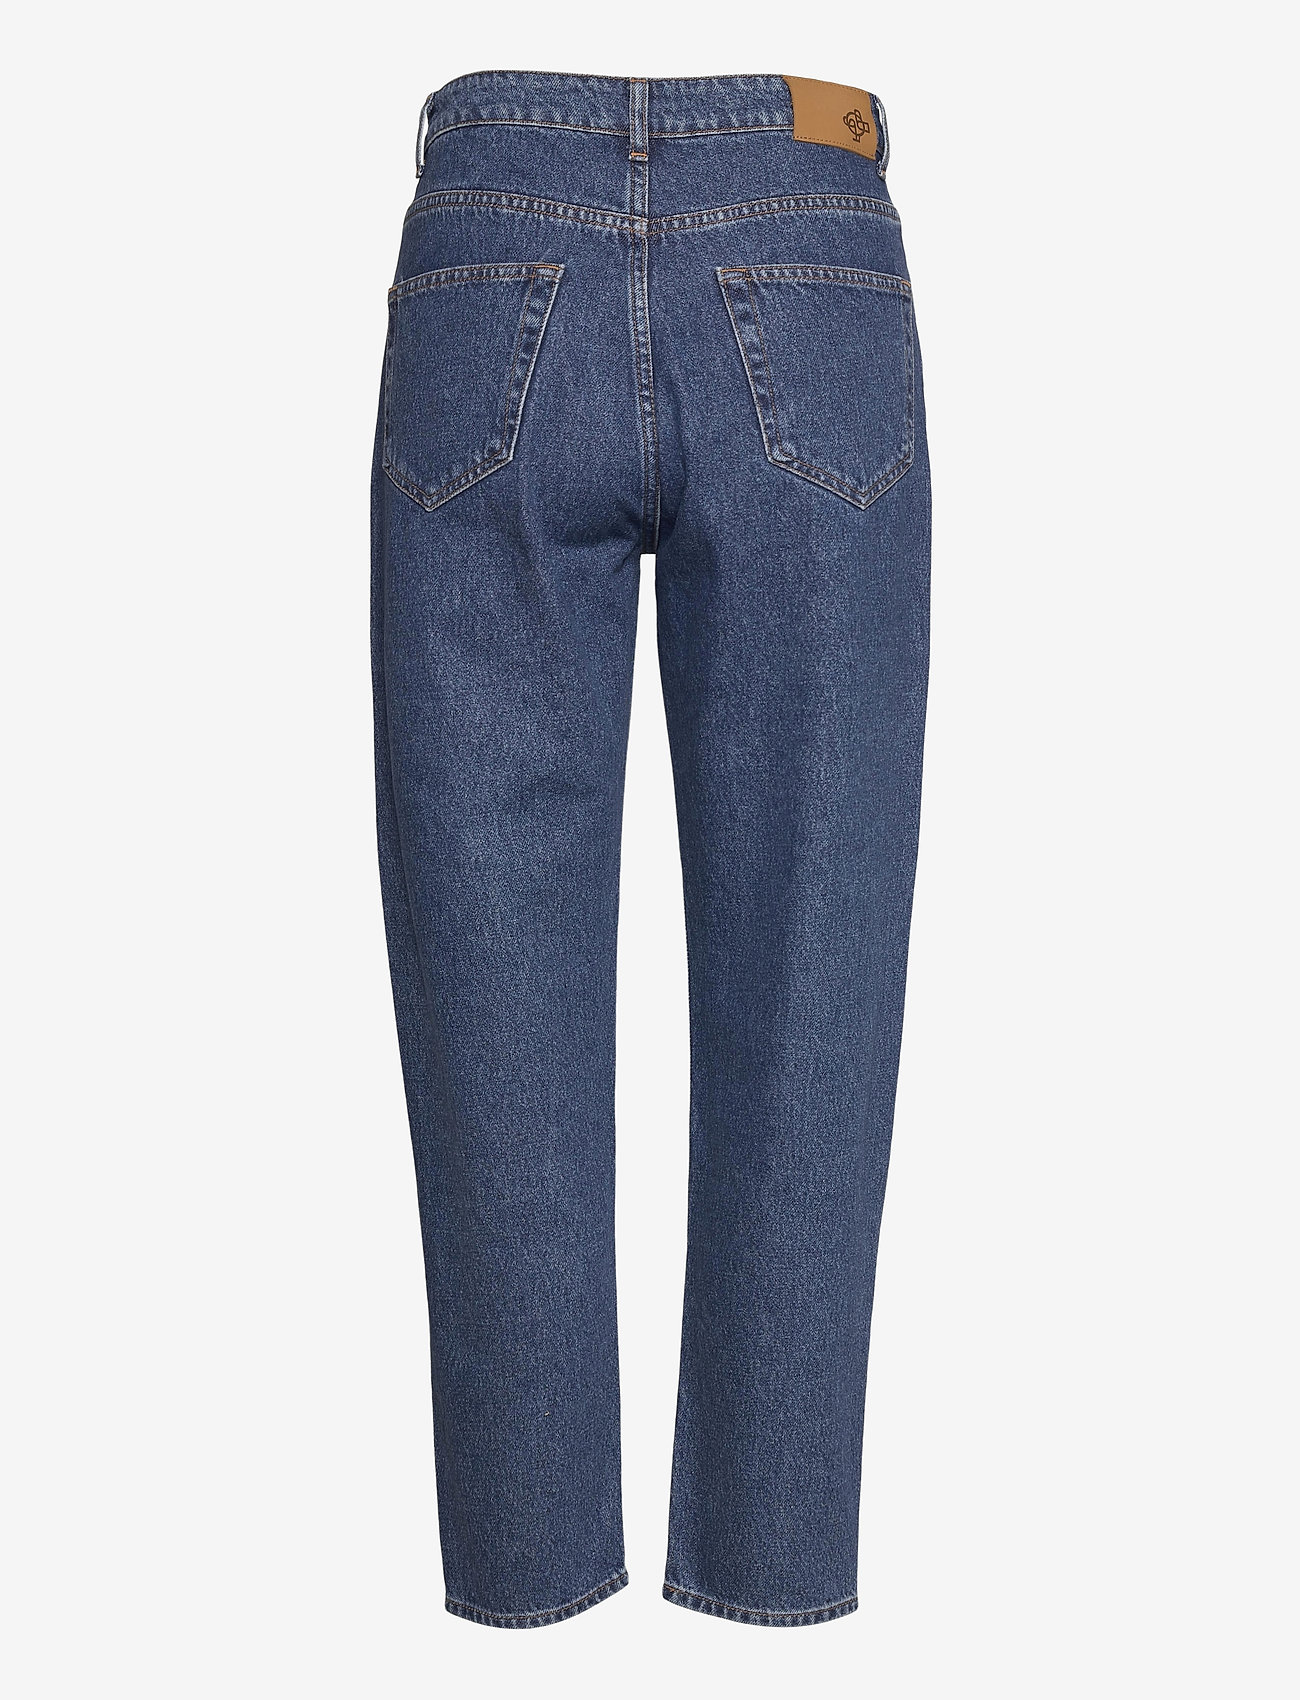 Just Female - Stormy jeans 0102 - tiesaus kirpimo džinsai - middle blue - 1